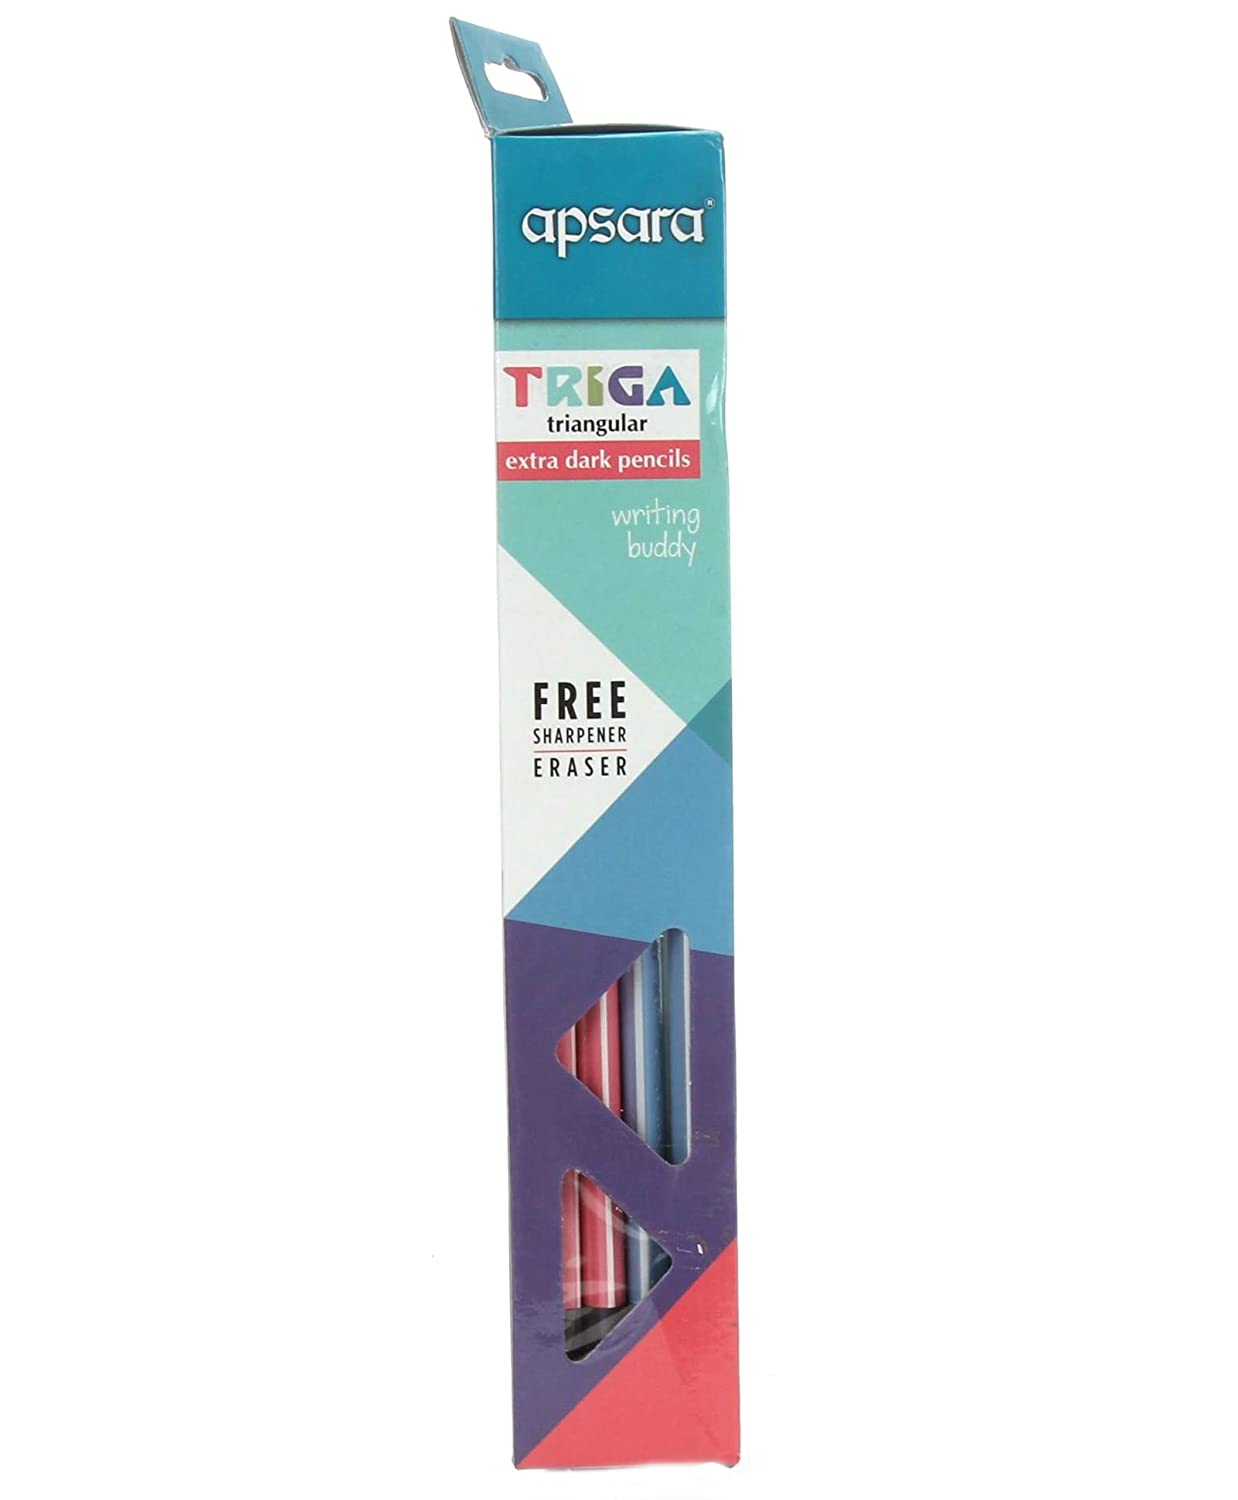 Apsara Triga Extra Dark Pencils Pack of 70